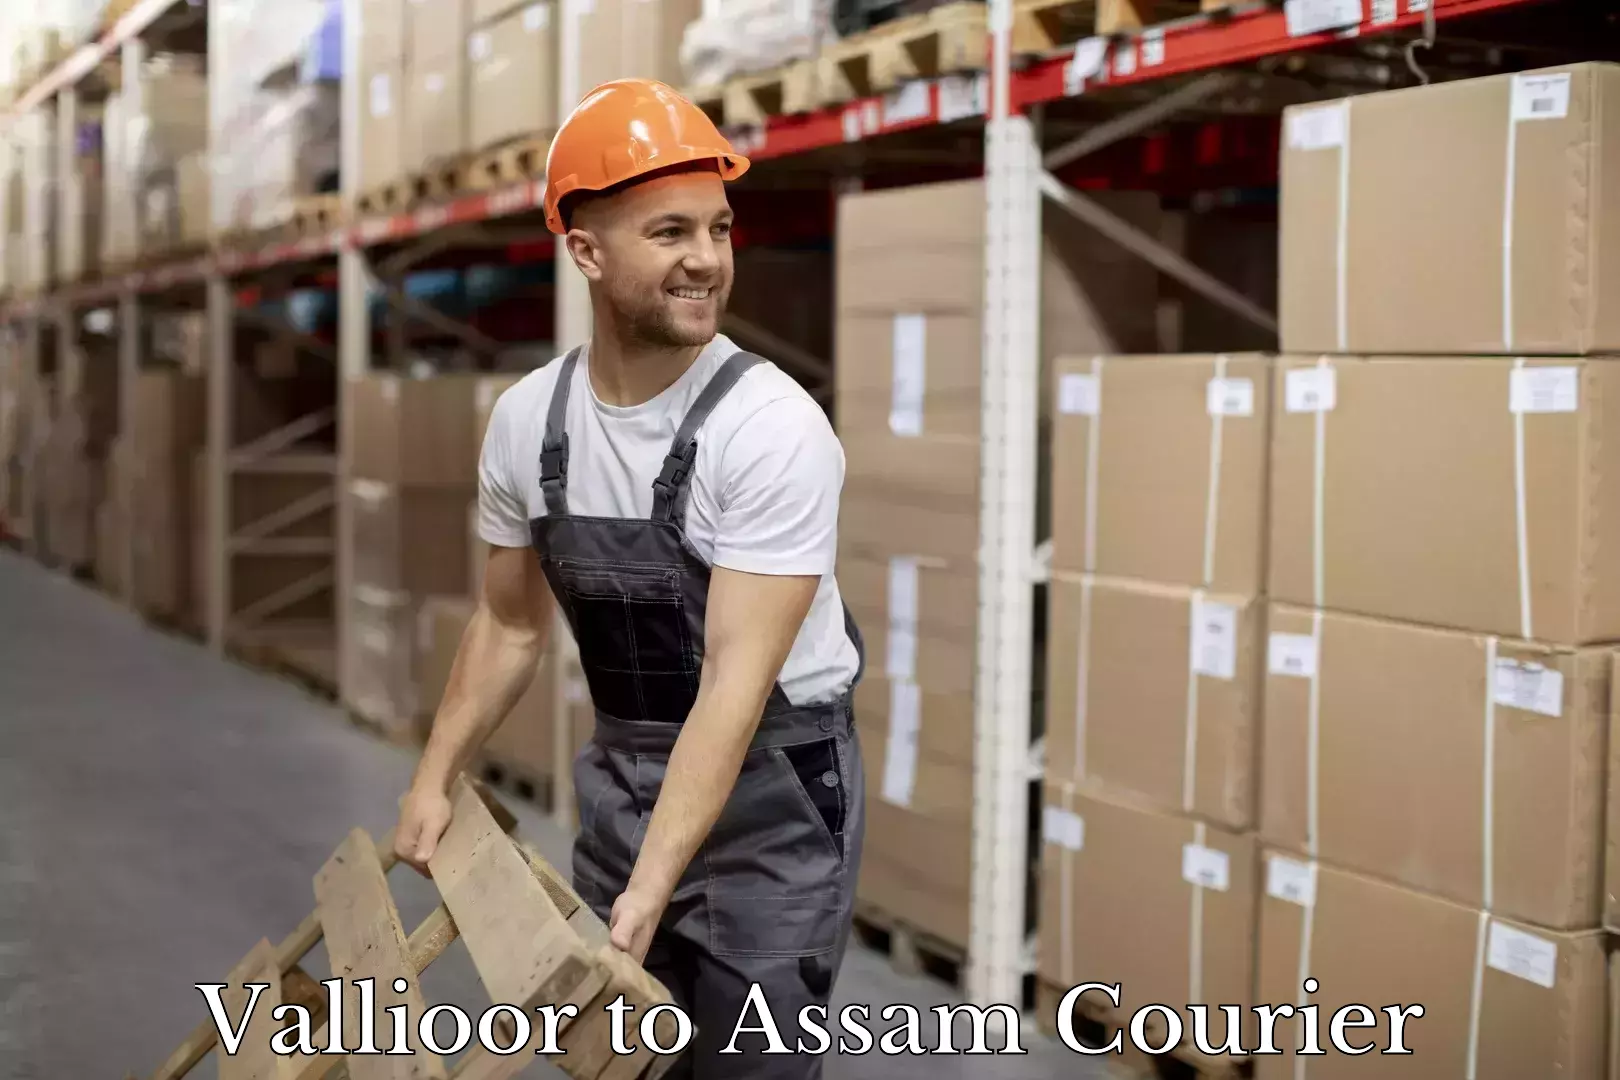 Courier service comparison Vallioor to Assam